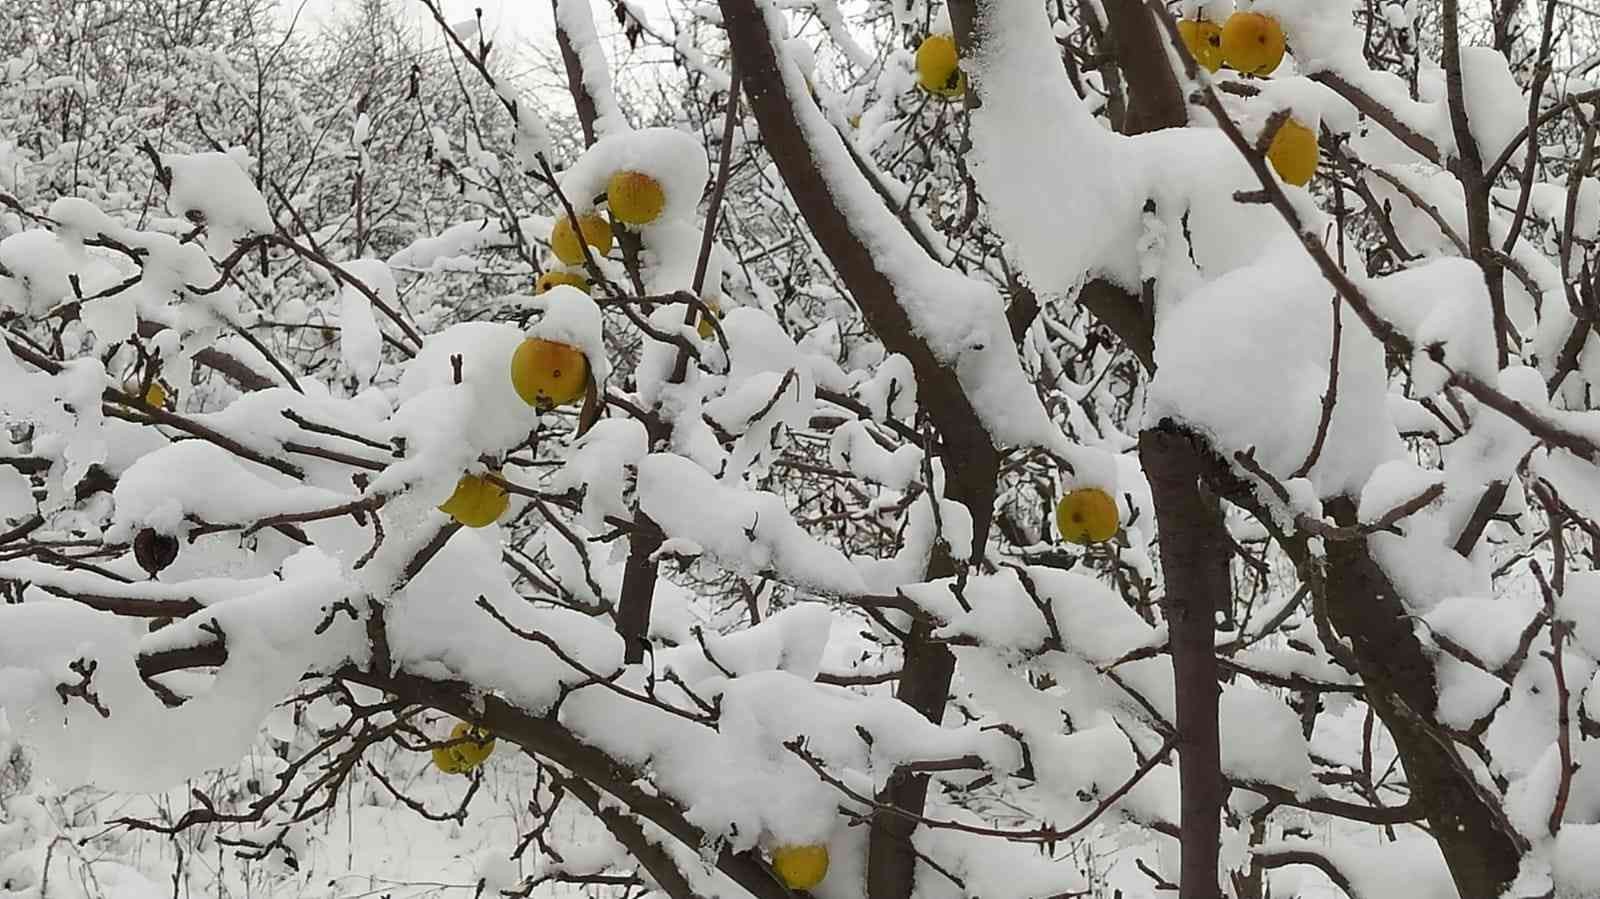 Üzeri kar birikmiş sarı renkli elmalar kartpostallık görüntü oluşturdu #kutahya